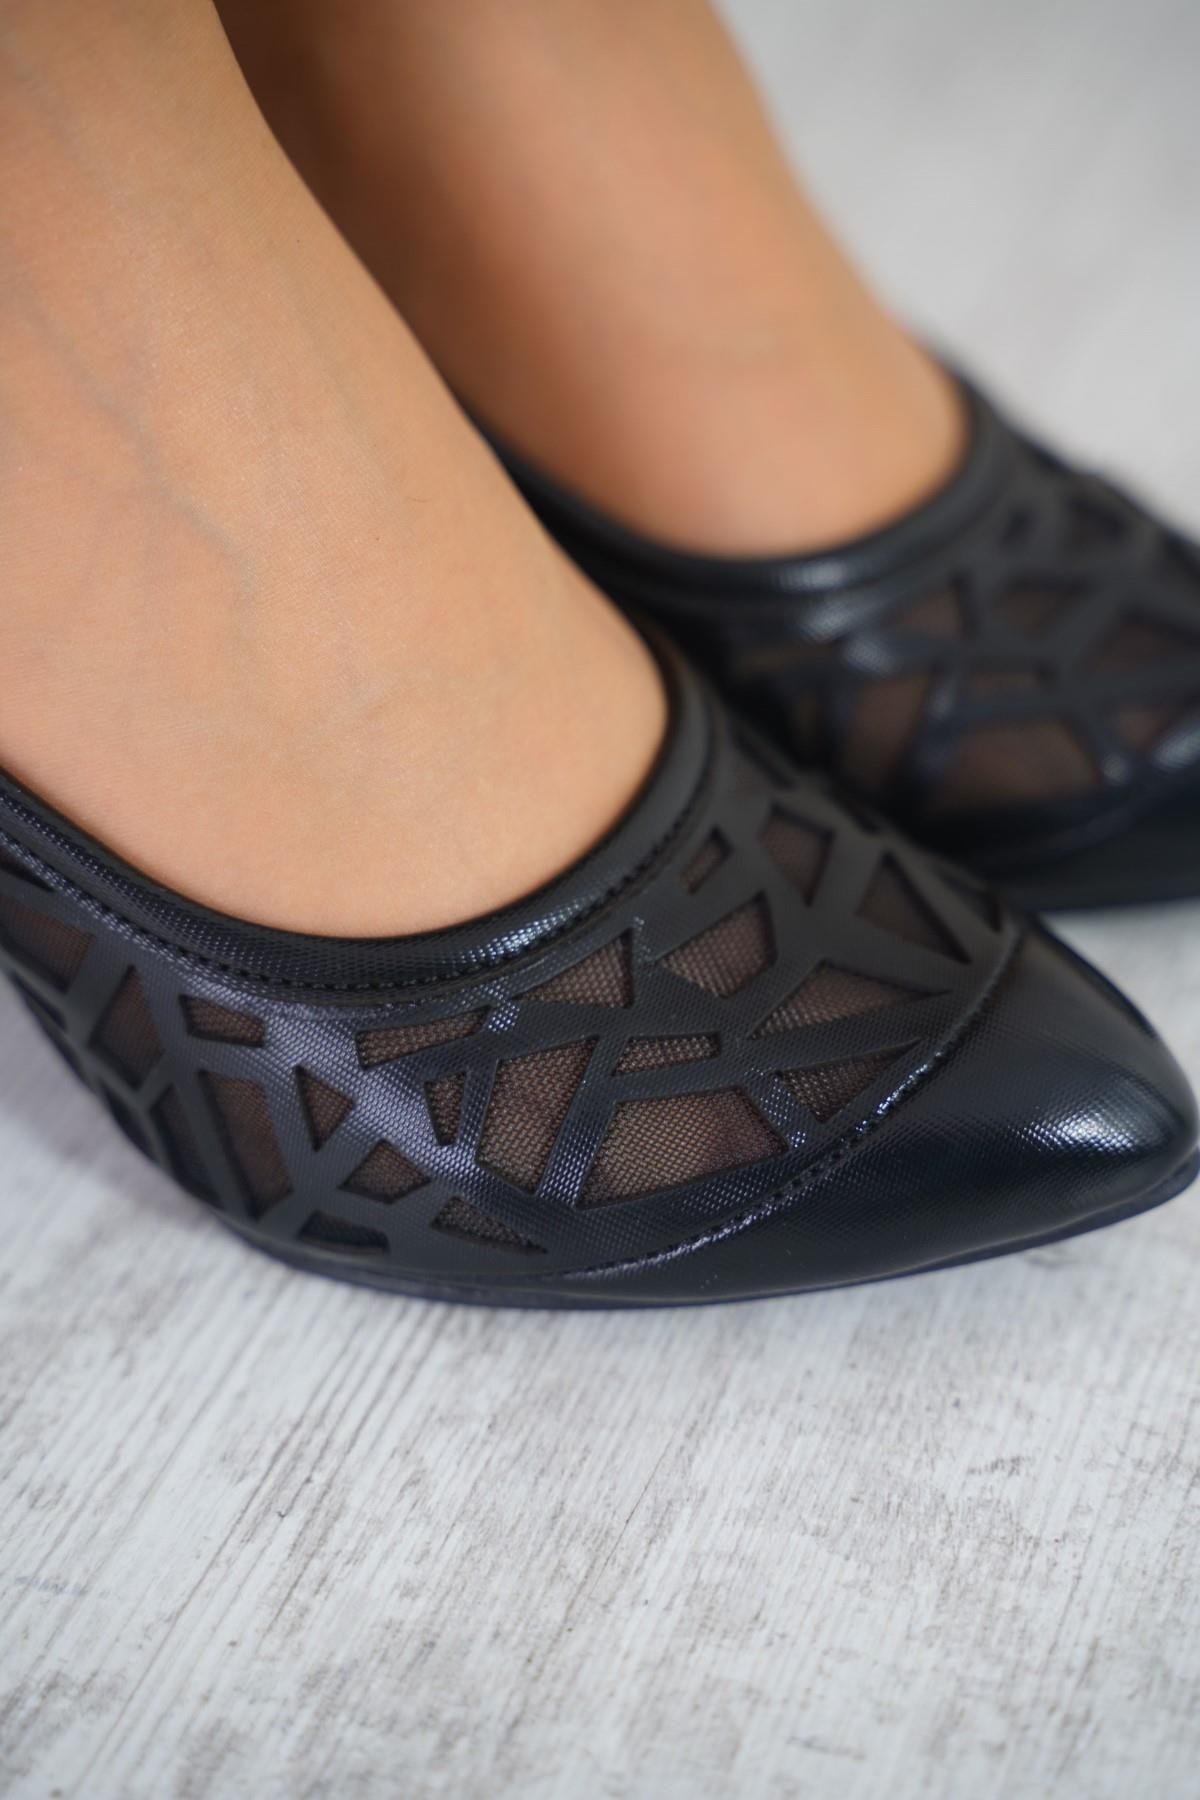 Moda Pie Lola Piramit Lazerli Kadın Topuklu Ayakkabı Siyah Saten